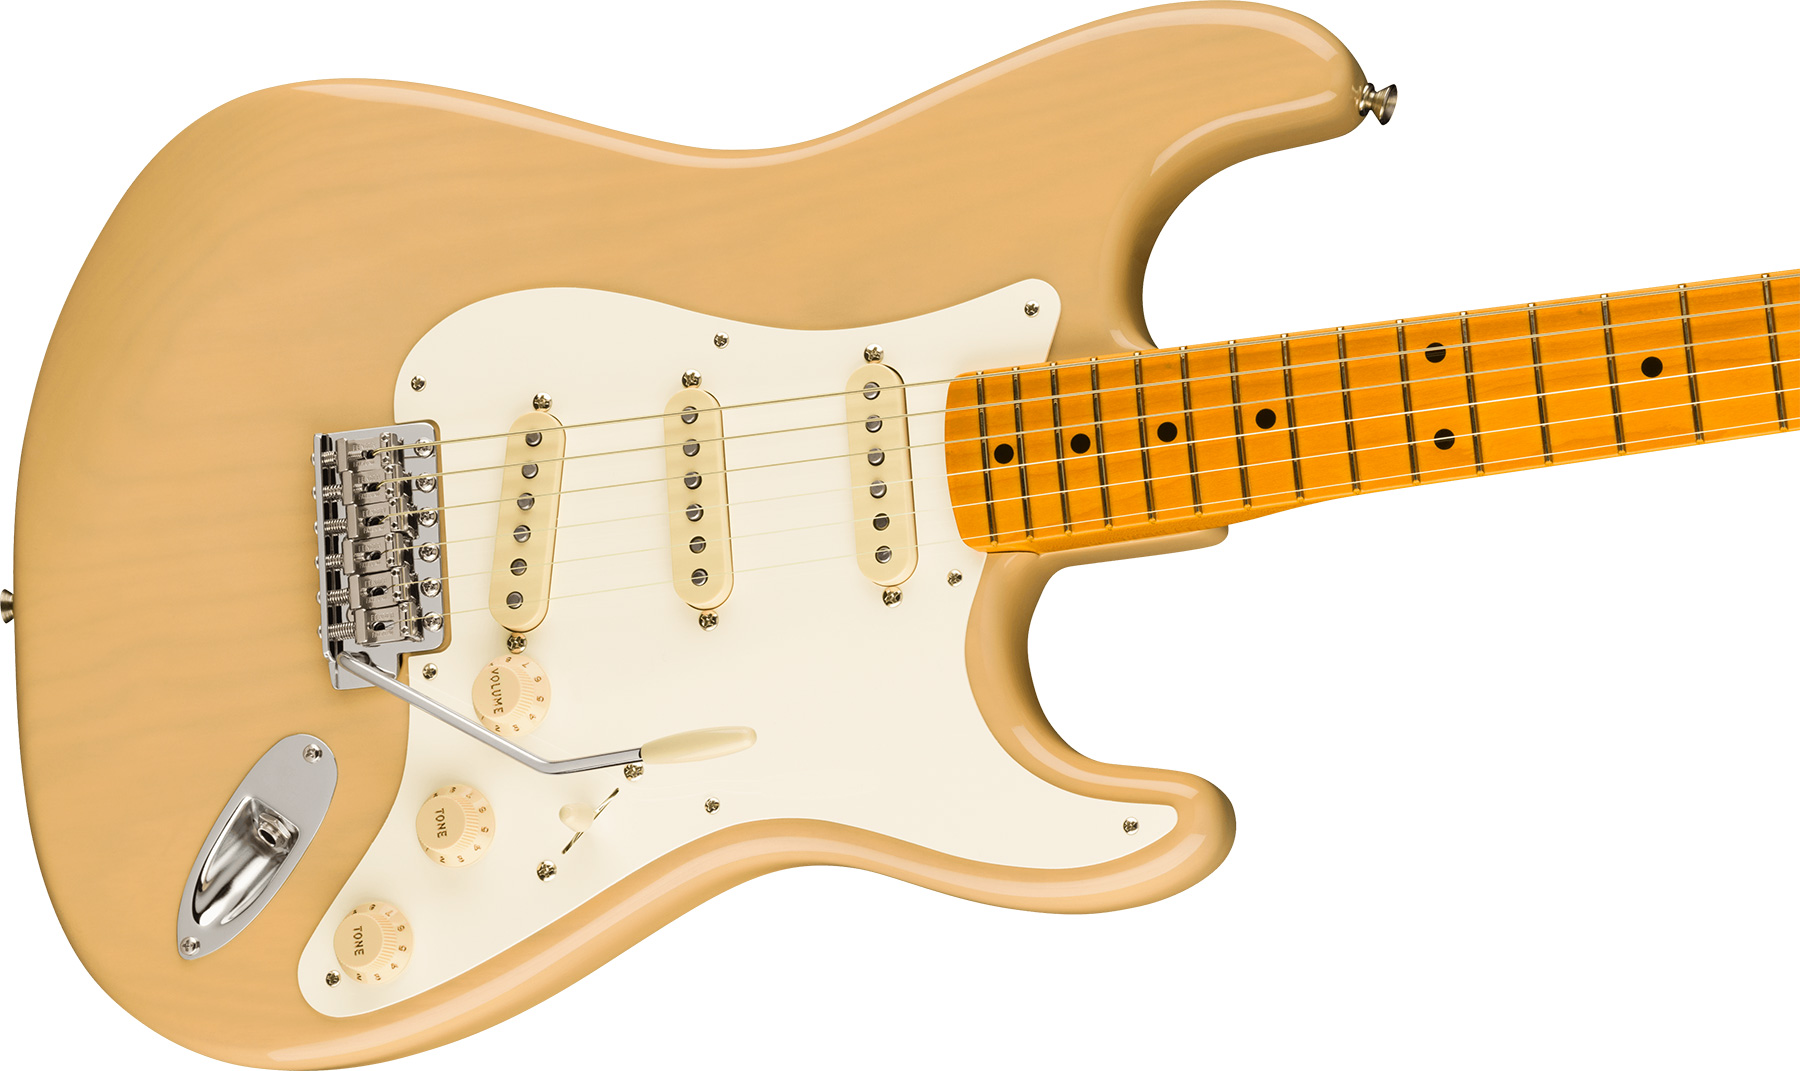 Fender Strat 1957 American Vintage Ii Usa 3s Trem Mn - Vintage Blonde - Guitare Électrique Forme Str - Variation 2